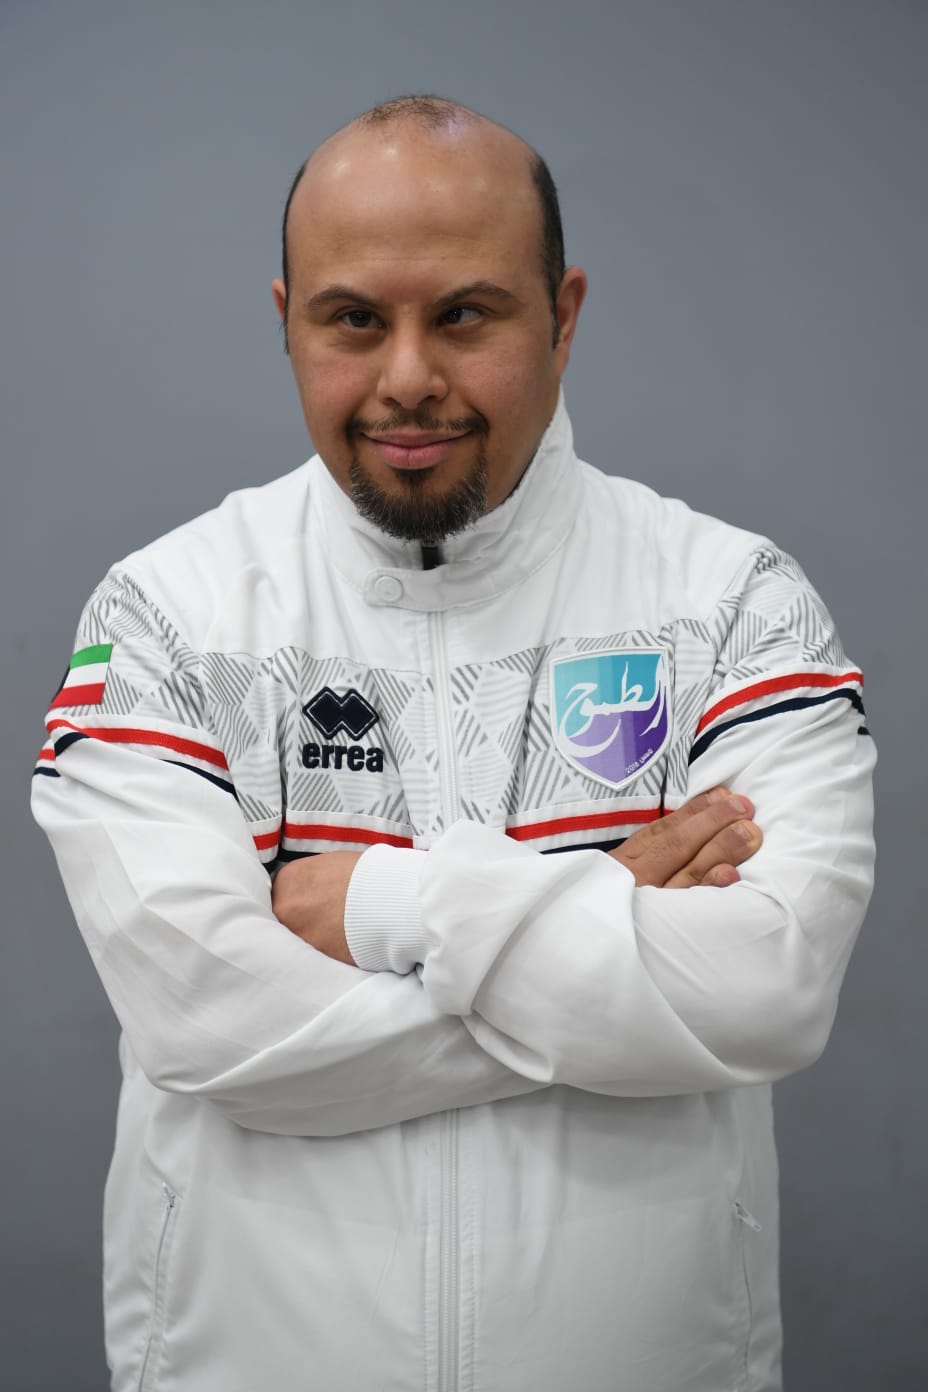 Swimmer Mishal Al-Badern